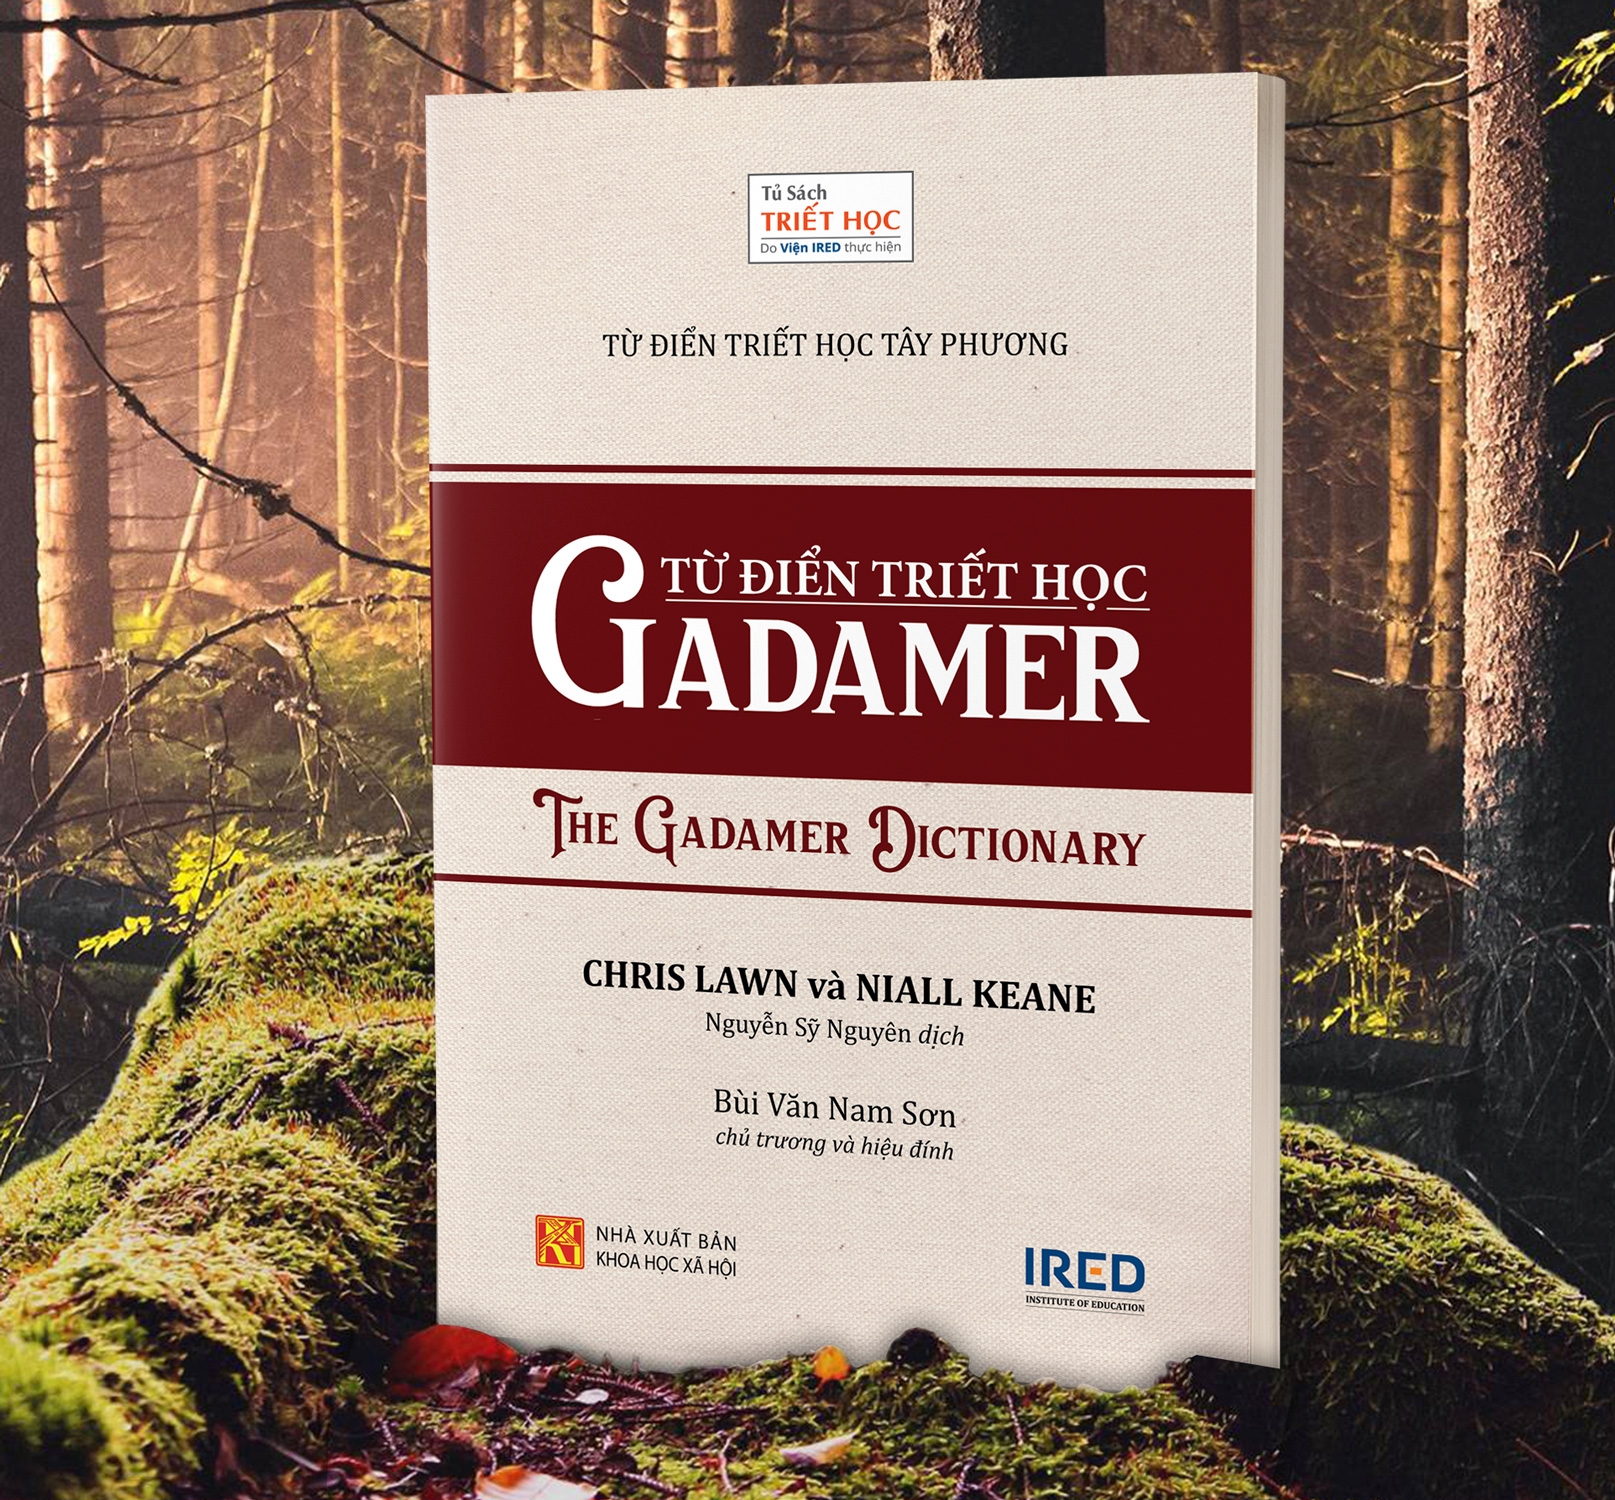 Từ Điển Triết Học Tây Phương - Từ Điển Triết Học Gadamer - The Gadamer Dictionary PDF